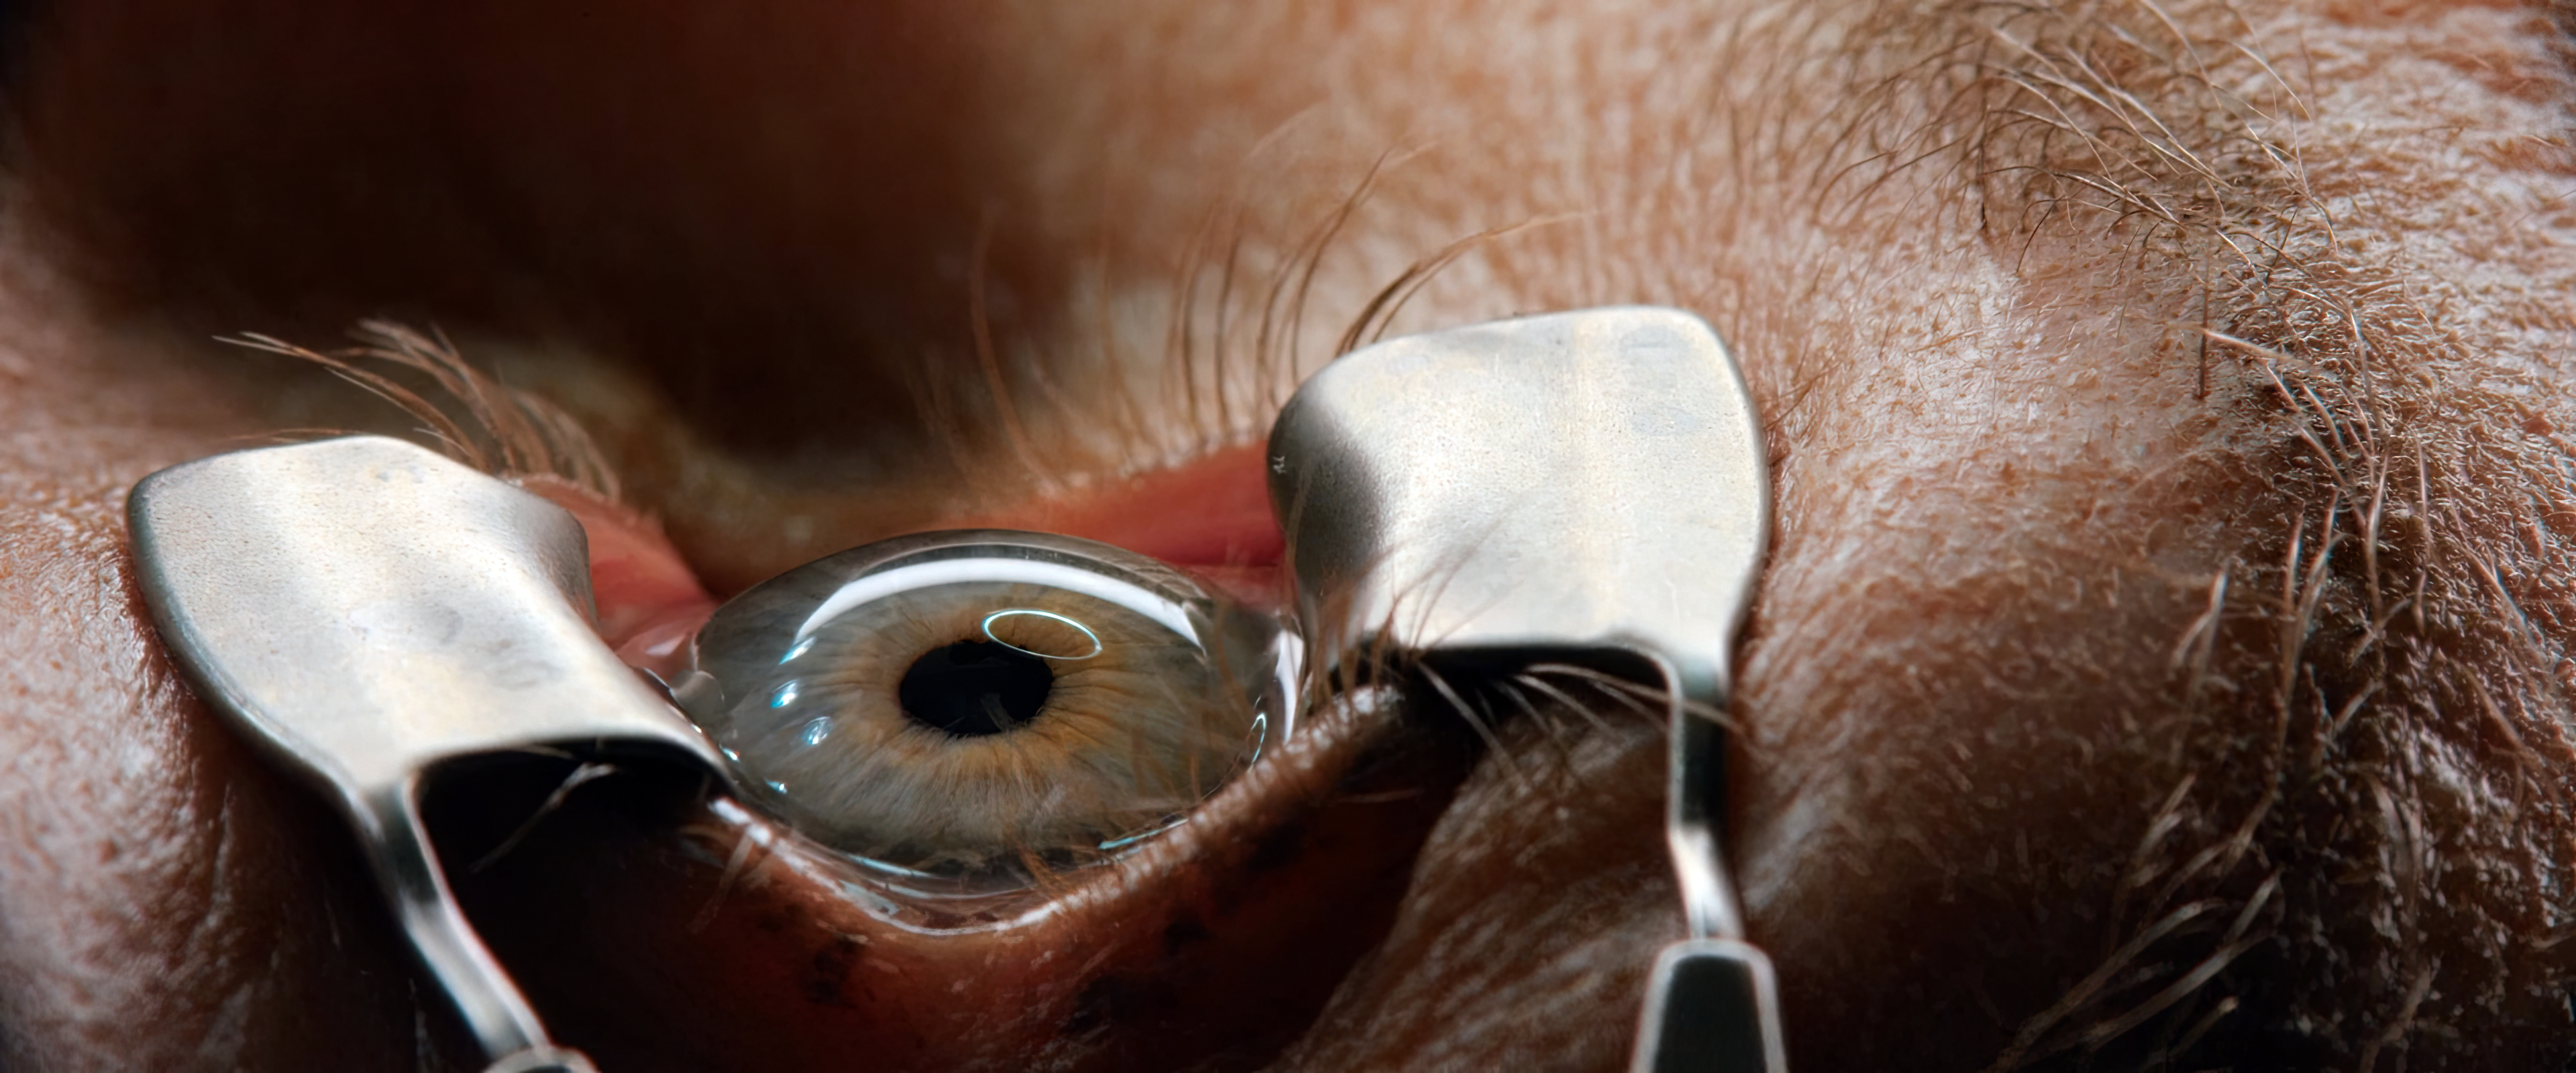 Векорасширитель для операций на глазах, Лазерная коррекция, Офтальмологический инструмент